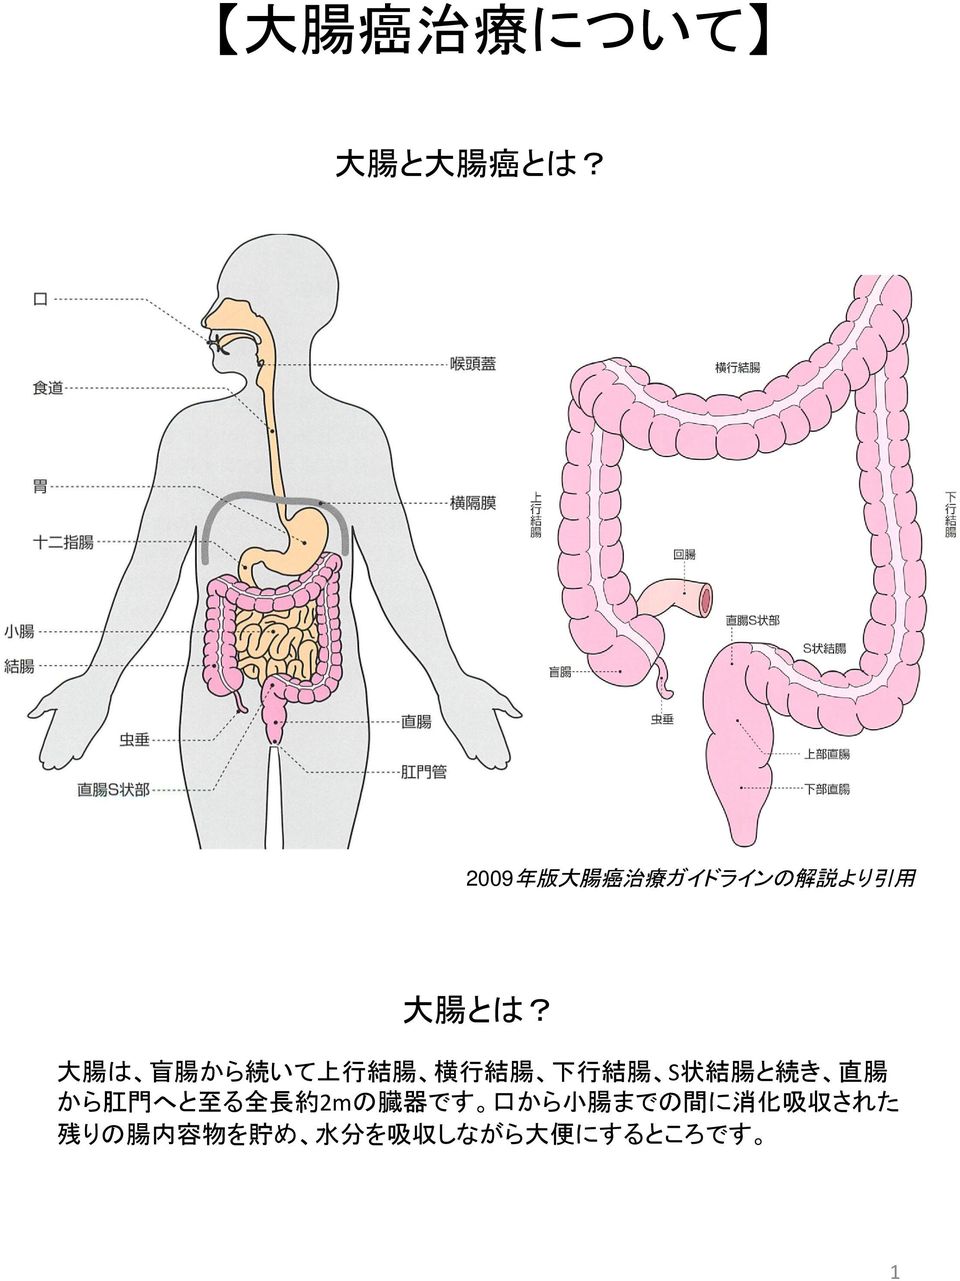 大 腸 は 盲 腸 から 続 いて 上 行 結 腸 横 行 結 腸 下 行 結 腸 S 状 結 腸 と 続 き 直 腸